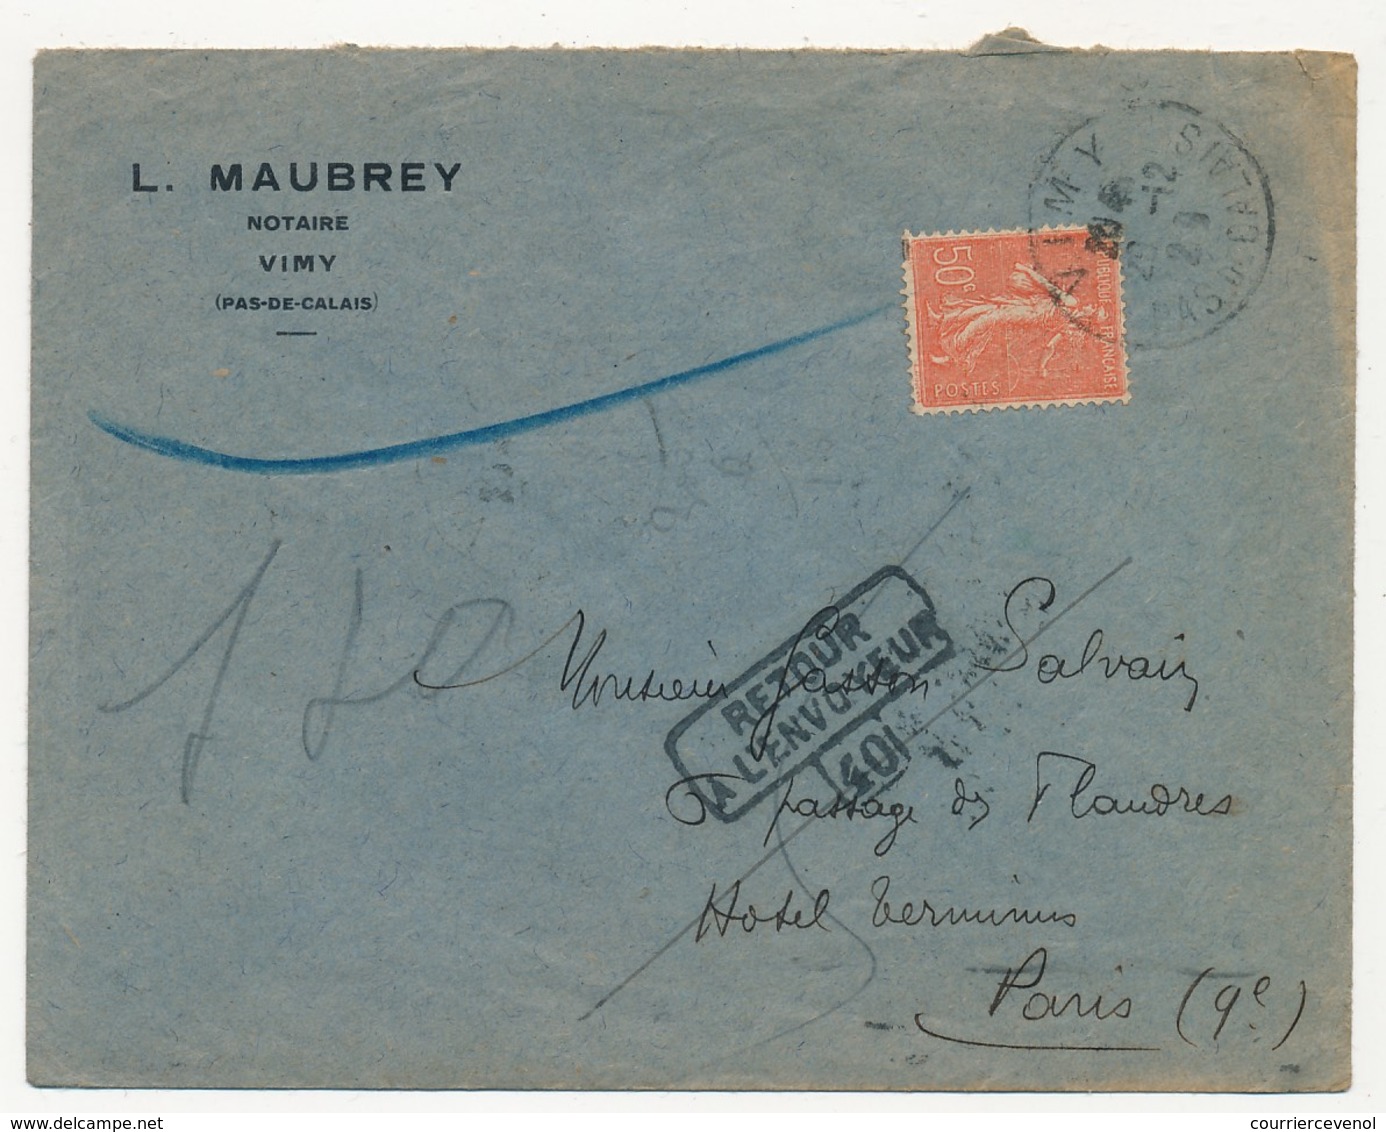 FRANCE - Enveloppe Depuis VIMY (Pas De Calais) 1929 - Cachet Numéroté "Retour à L'envoyeur 40" (Paris) - Manual Postmarks